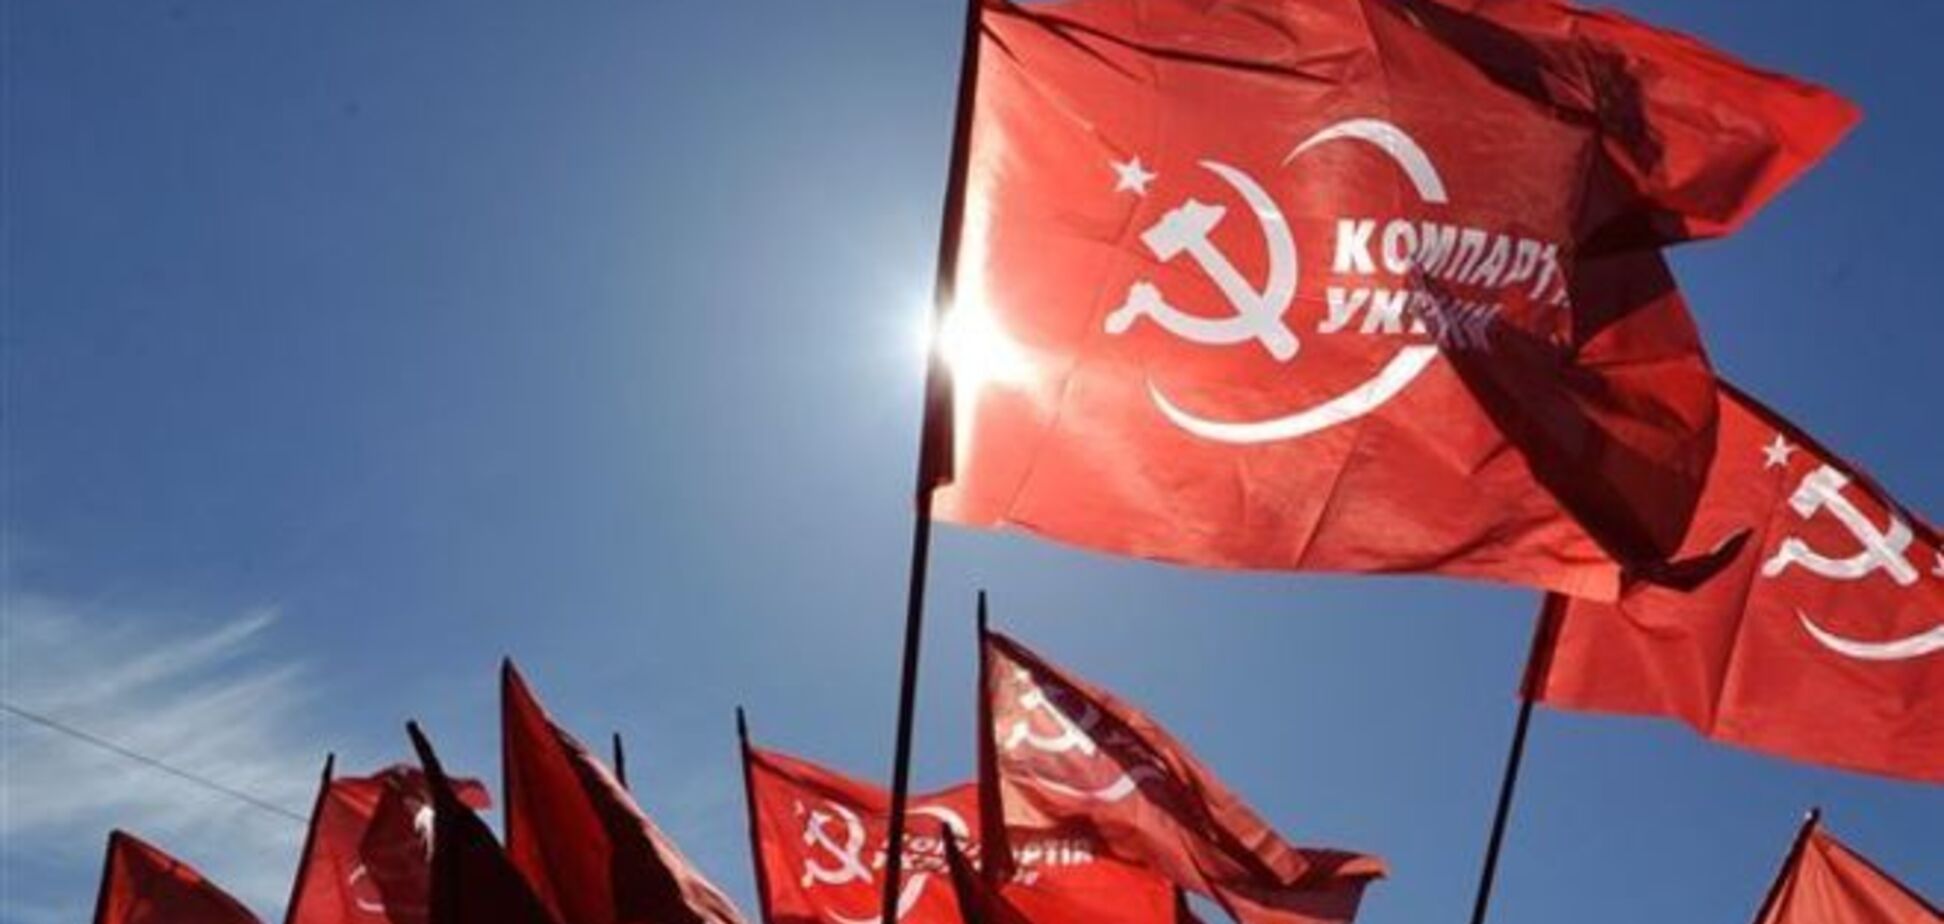 КПУ закликала СБУ та прокуратуру перевірити інформацію про зв'язки комуністів з терористами